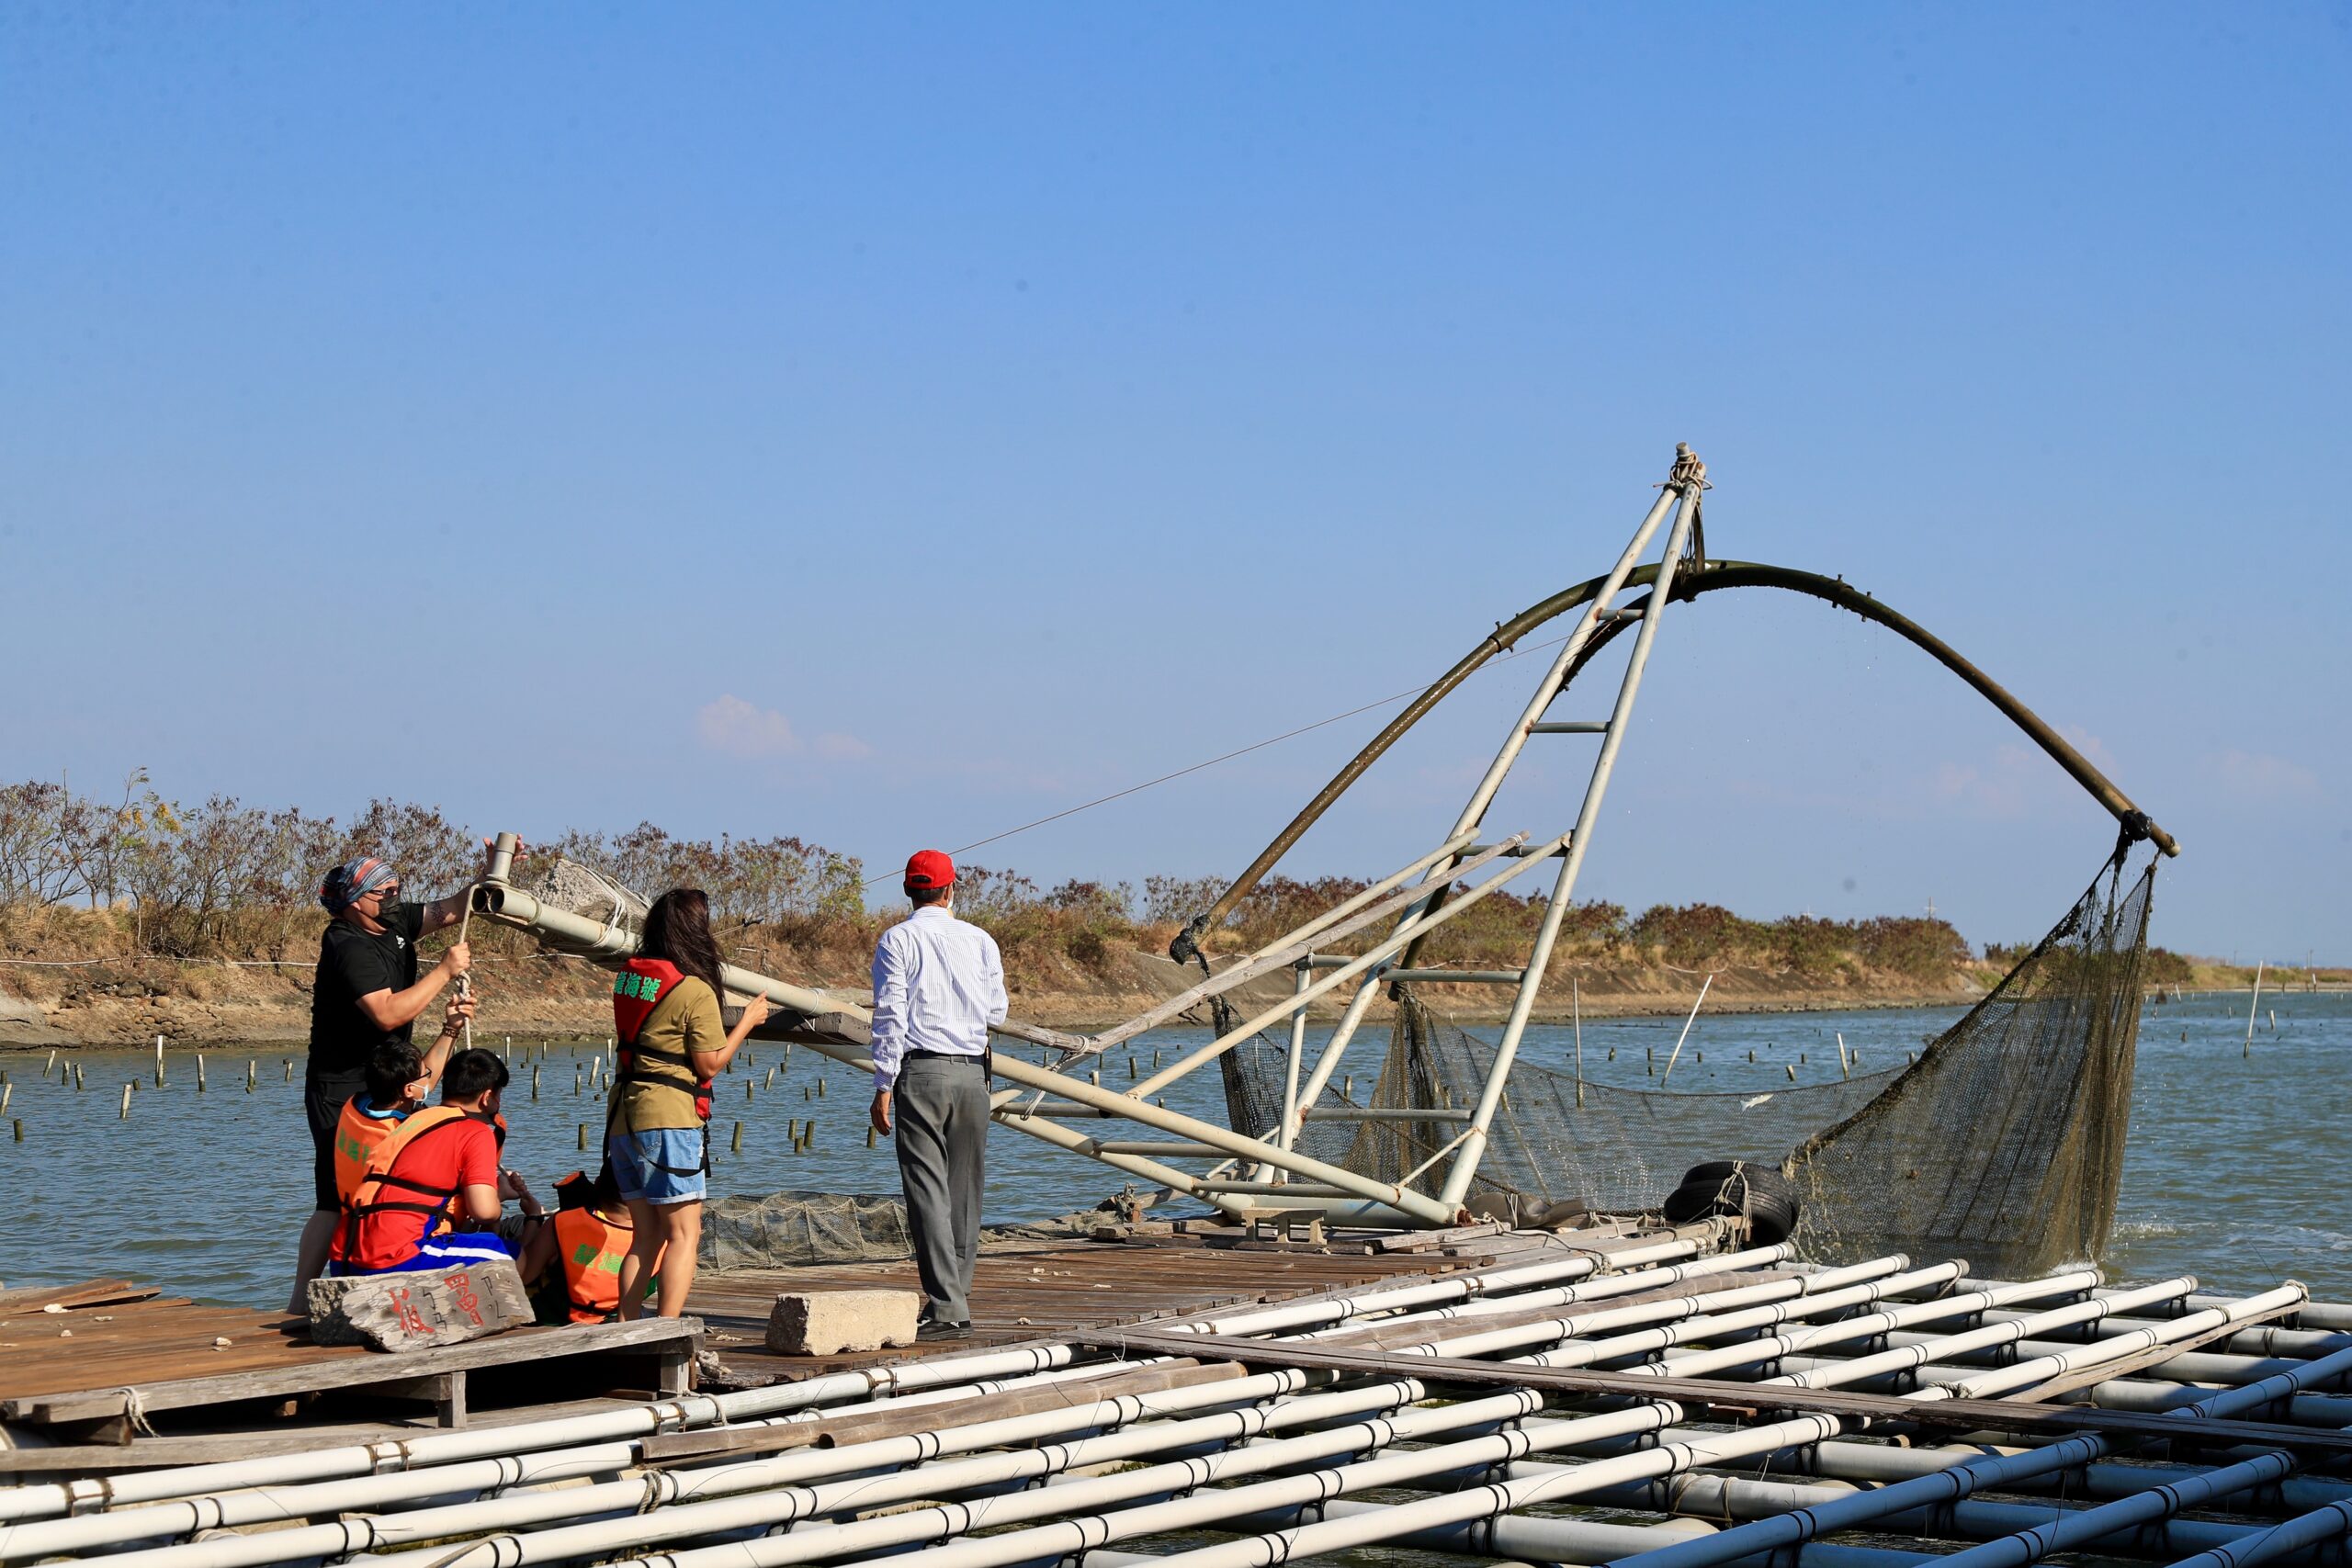 005台南七股龍海號會帶領遊客體驗潟湖內的定置漁網捕魚方法002